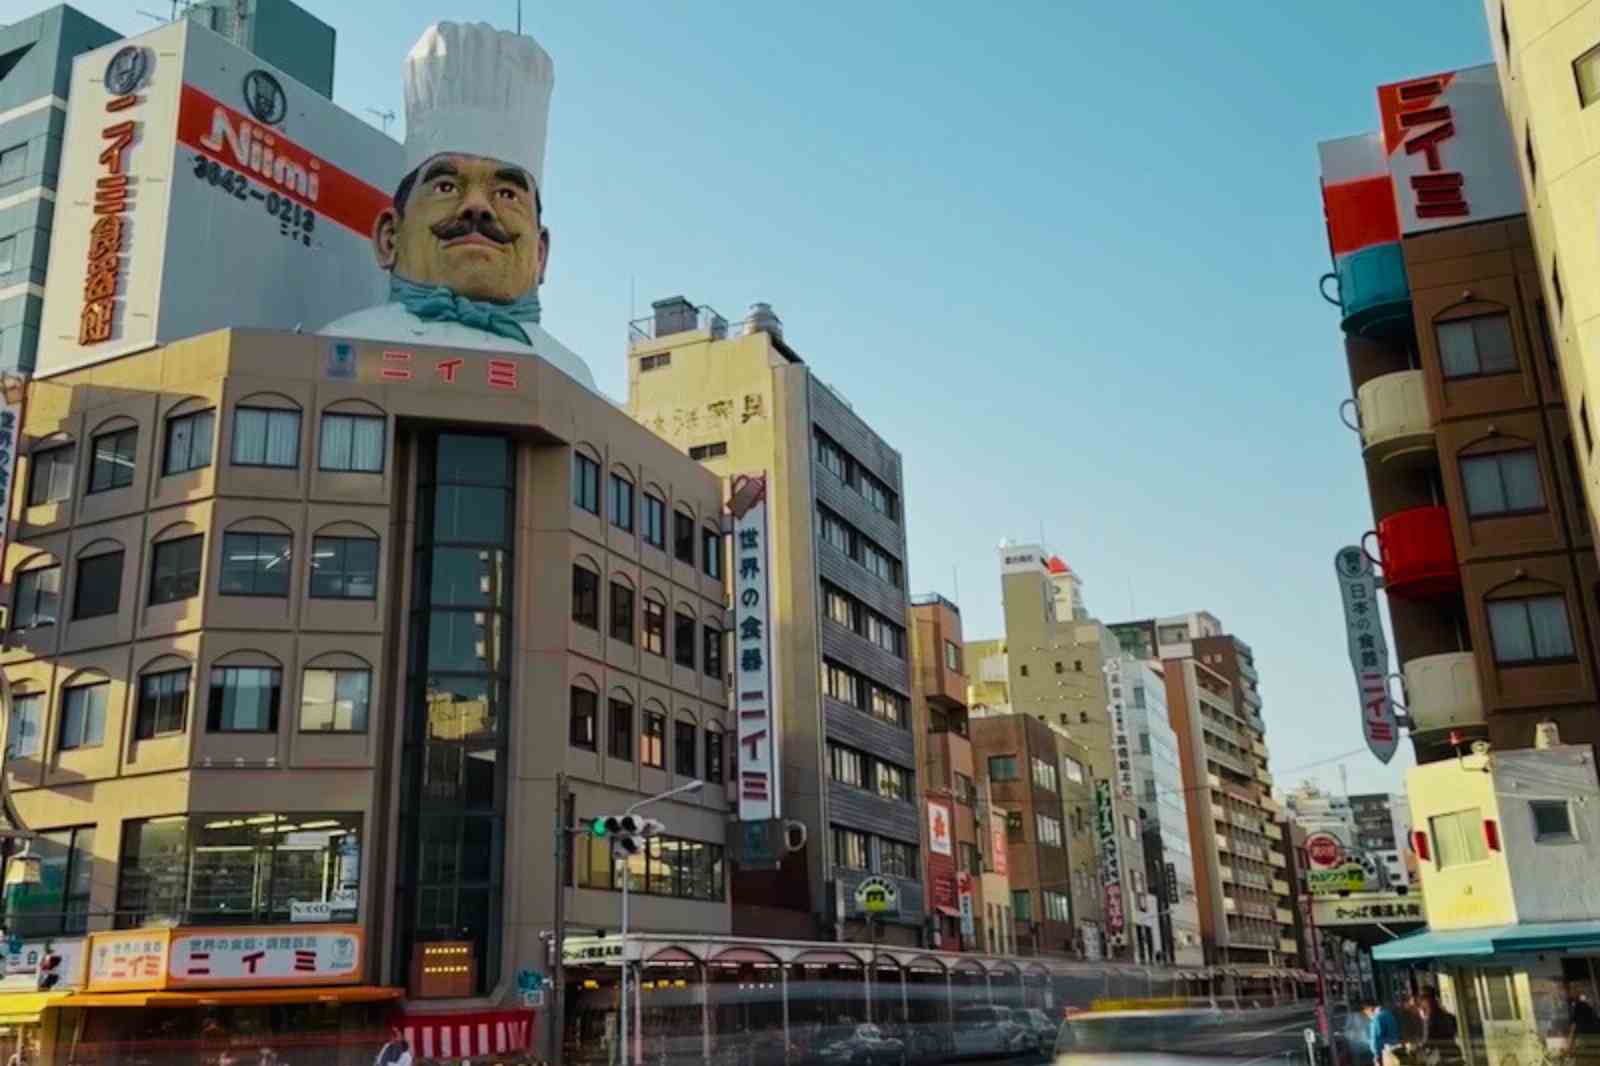 日本一の道具街をぶらり散策【浅草・かっぱ橋道具街】